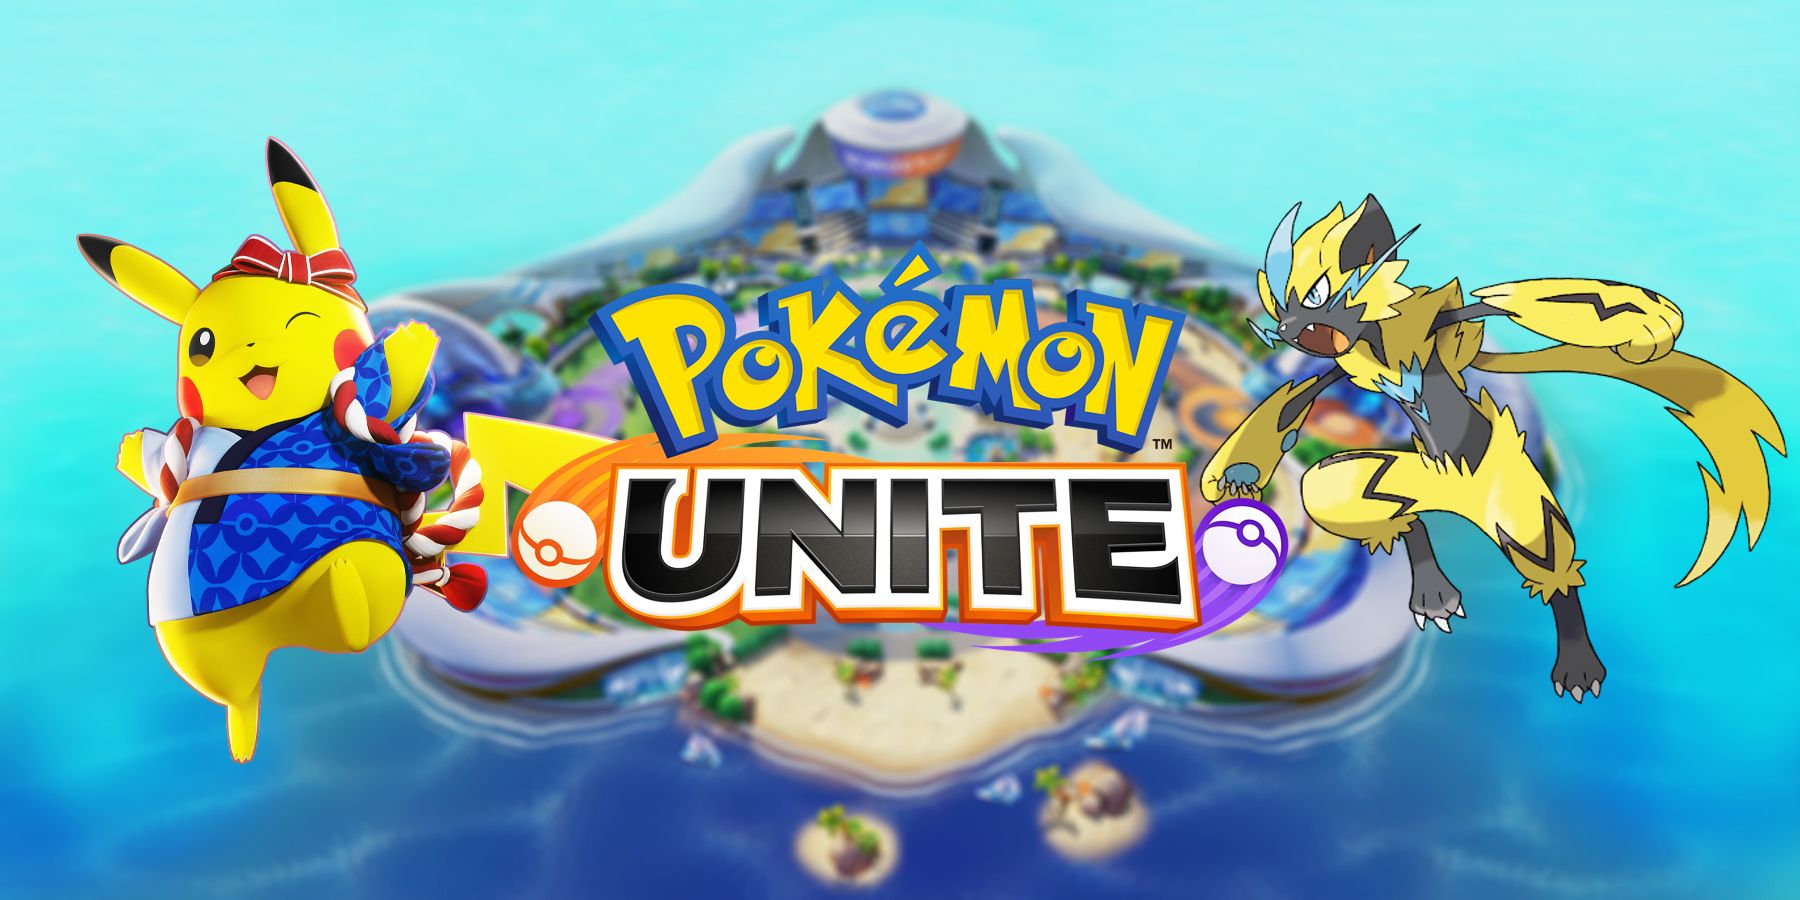 Dit is een goed moment om Pokemon Unite te gaan spelen